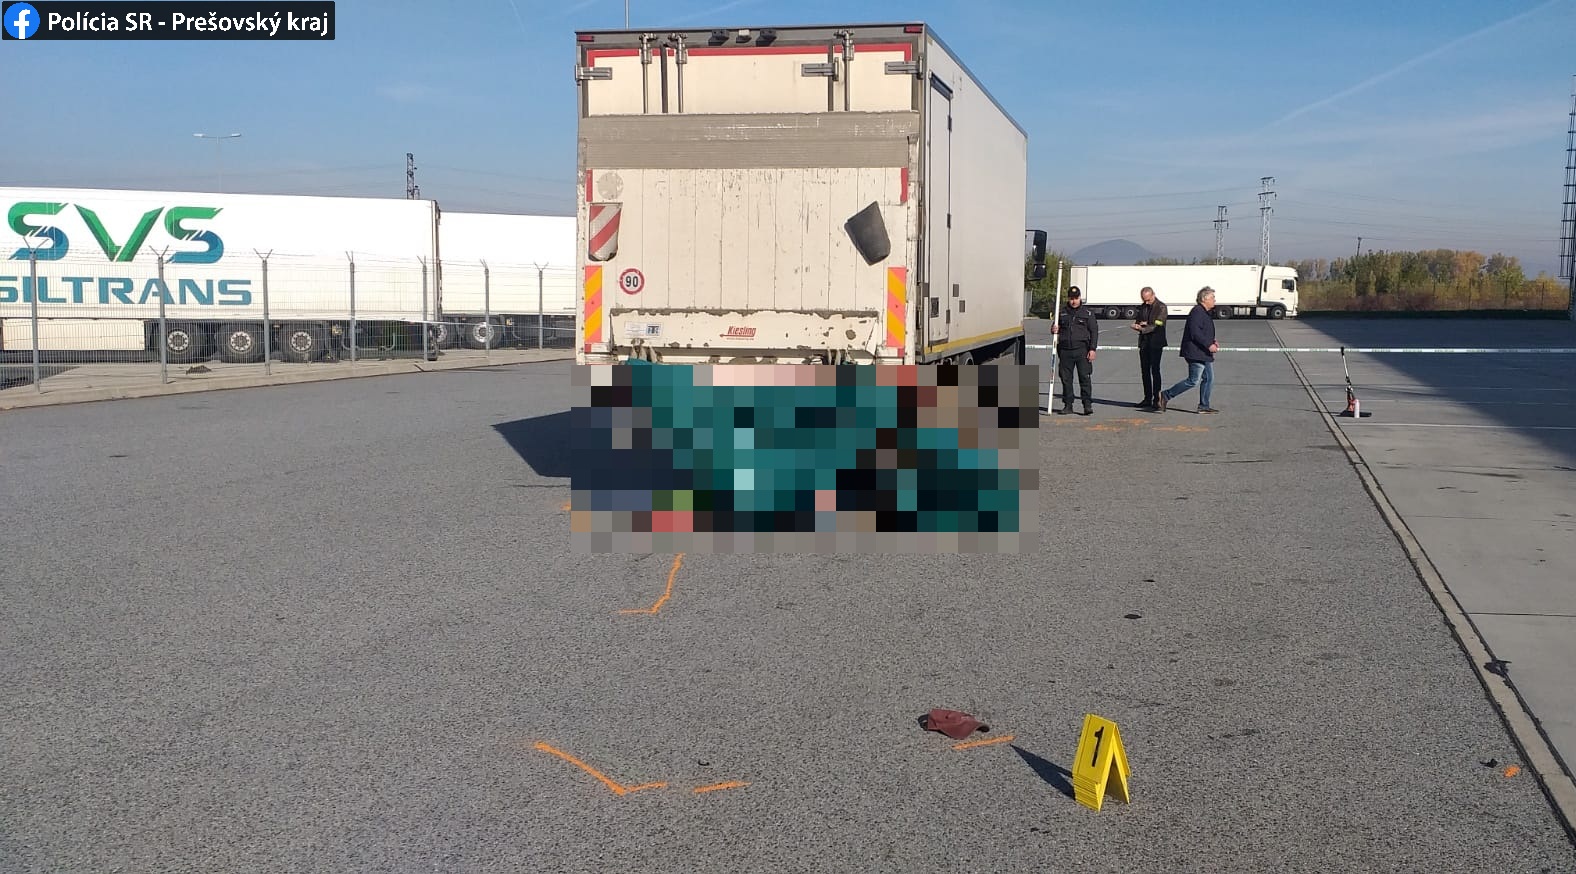 TRAGÉDIA az ipari parkban: Tolatás közben gázolt halálra a teherautó a 44 éves munkást